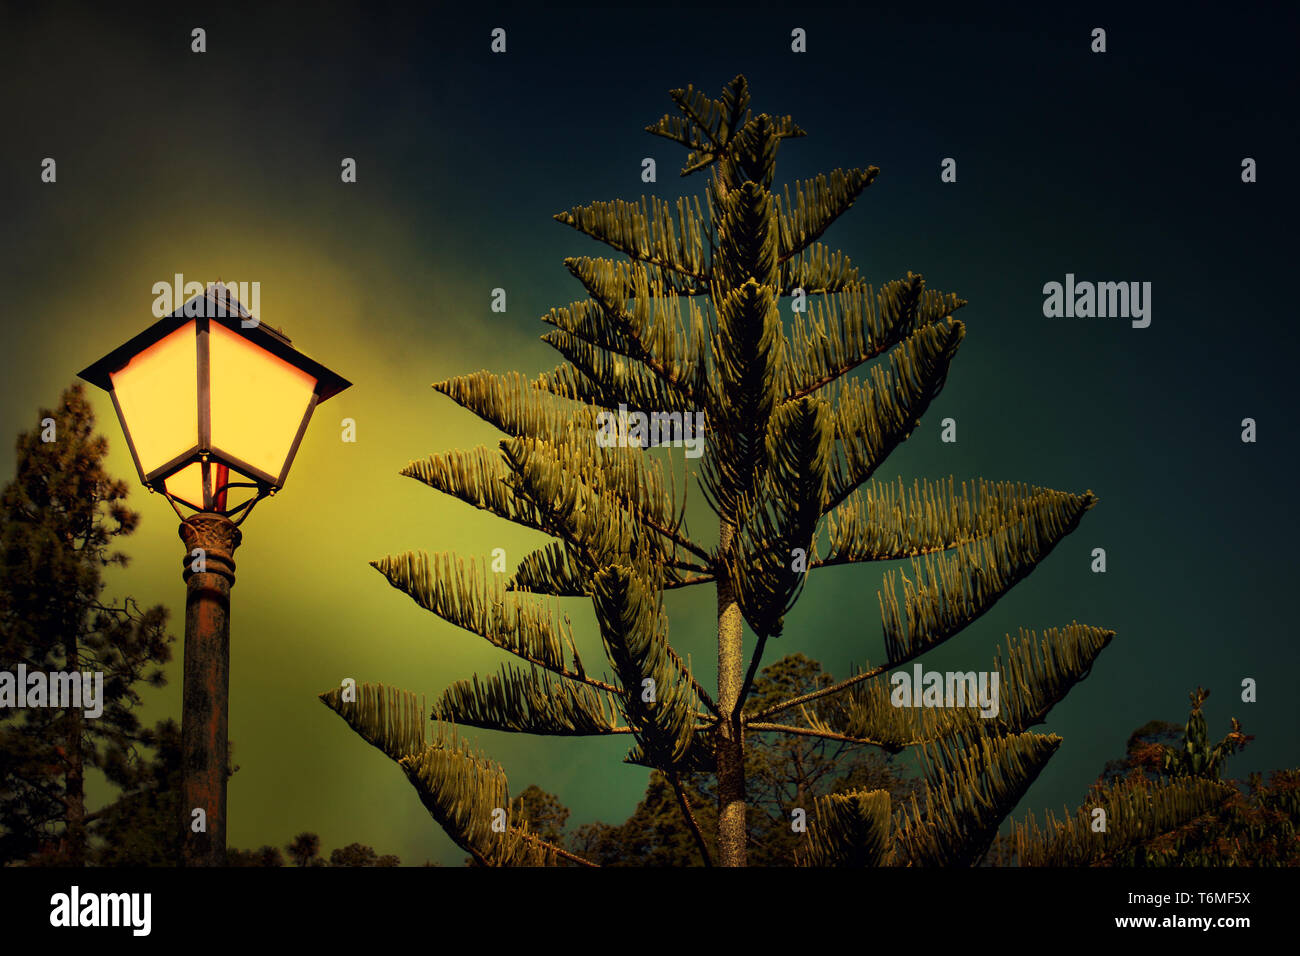 Detalle de un pino y la lámpara de la calle por la noche Foto de stock